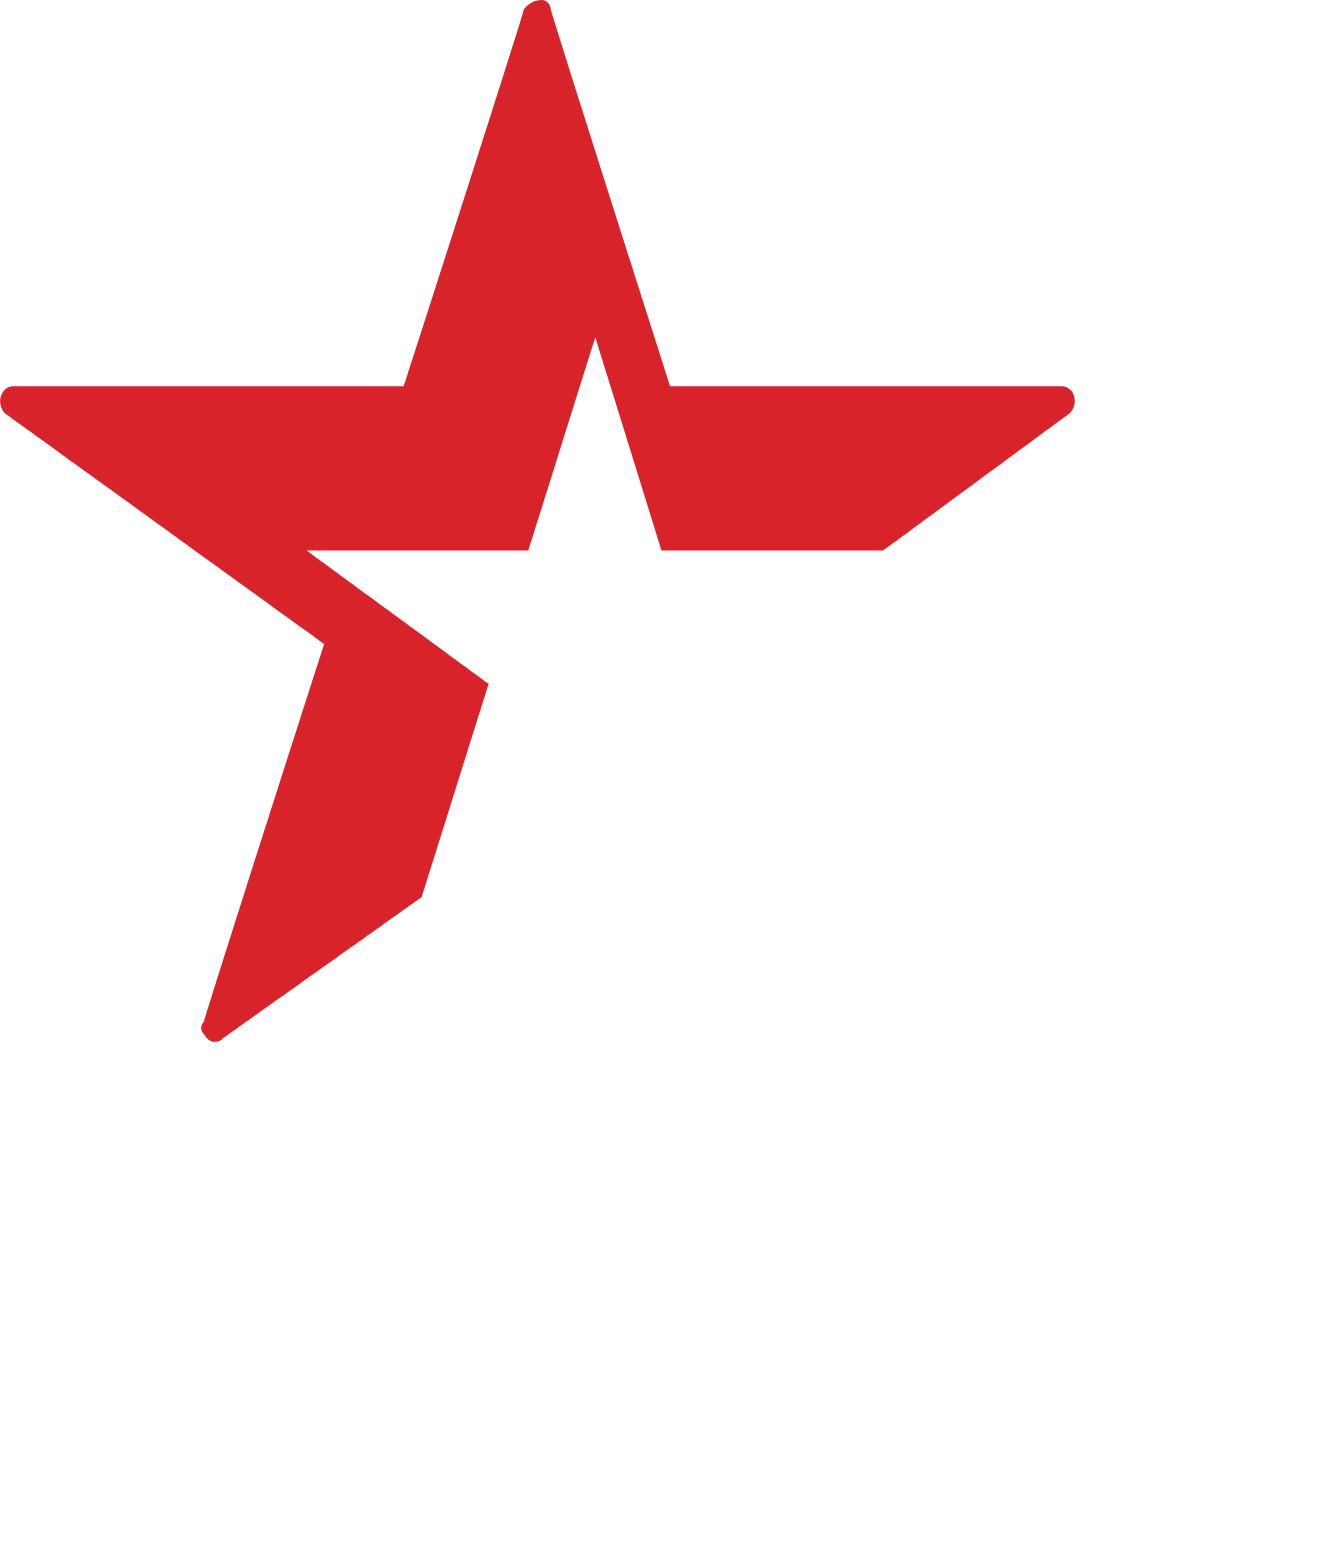 Heineken logo pour fonds sombres (PNG transparent)